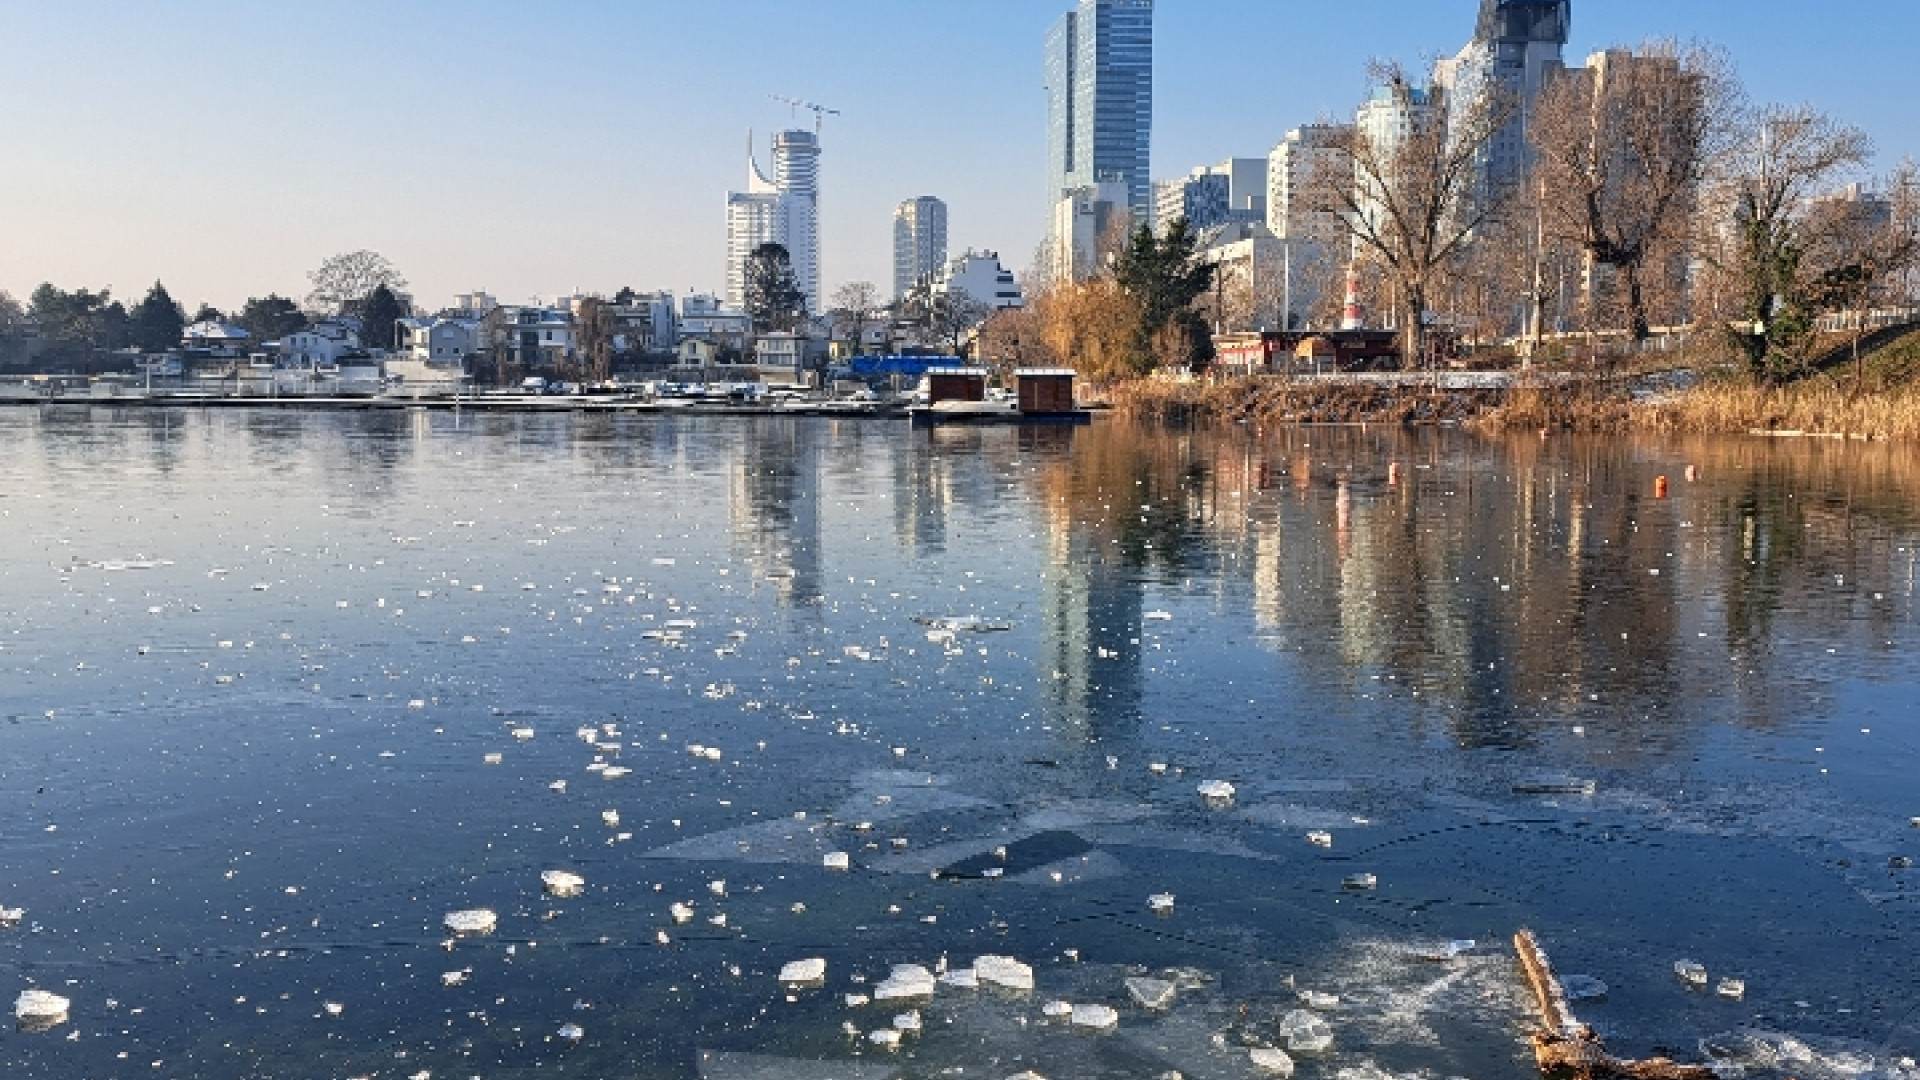 Stadt Wien warnt: Eislaufen auf Naturgewässern ist lebensgefährlich!